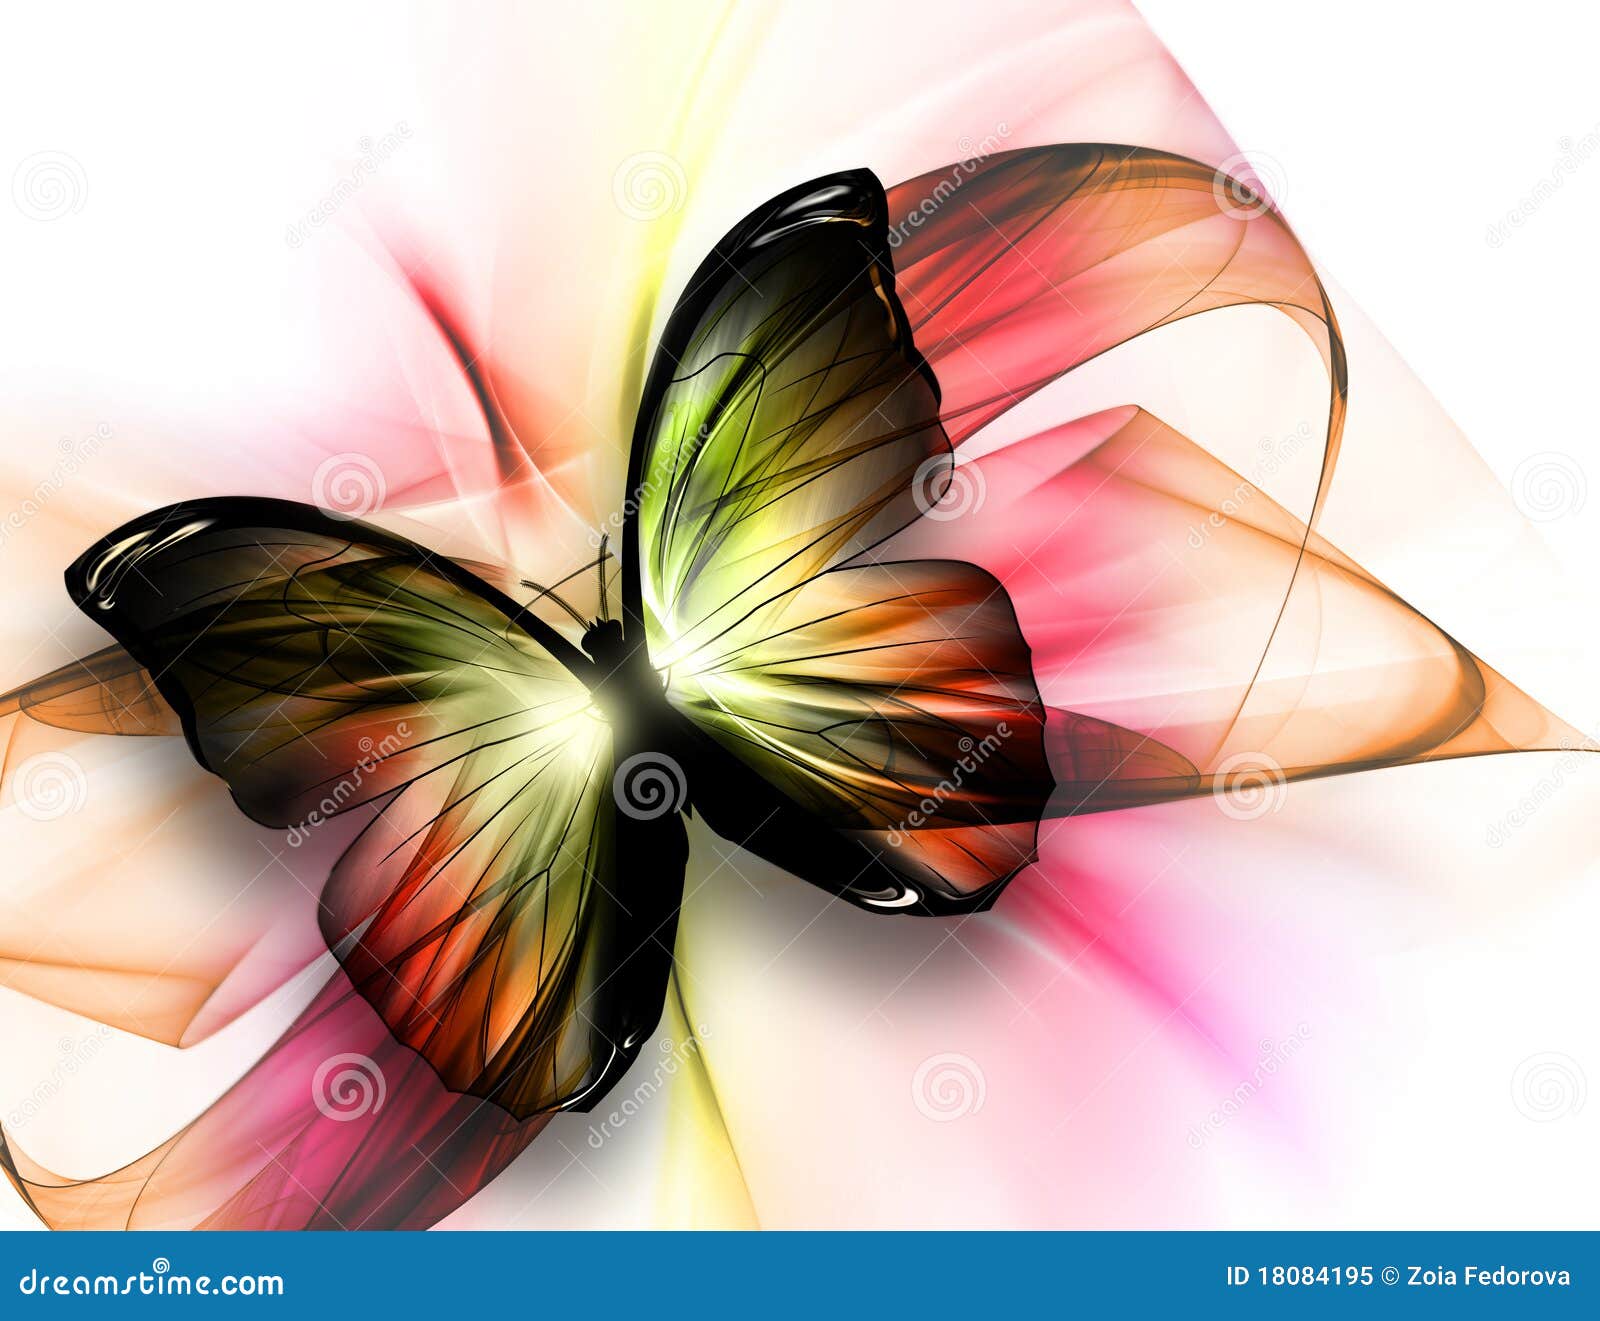 Wonderlijk Mooie vlinder stock illustratie. Illustratie bestaande uit CF-87